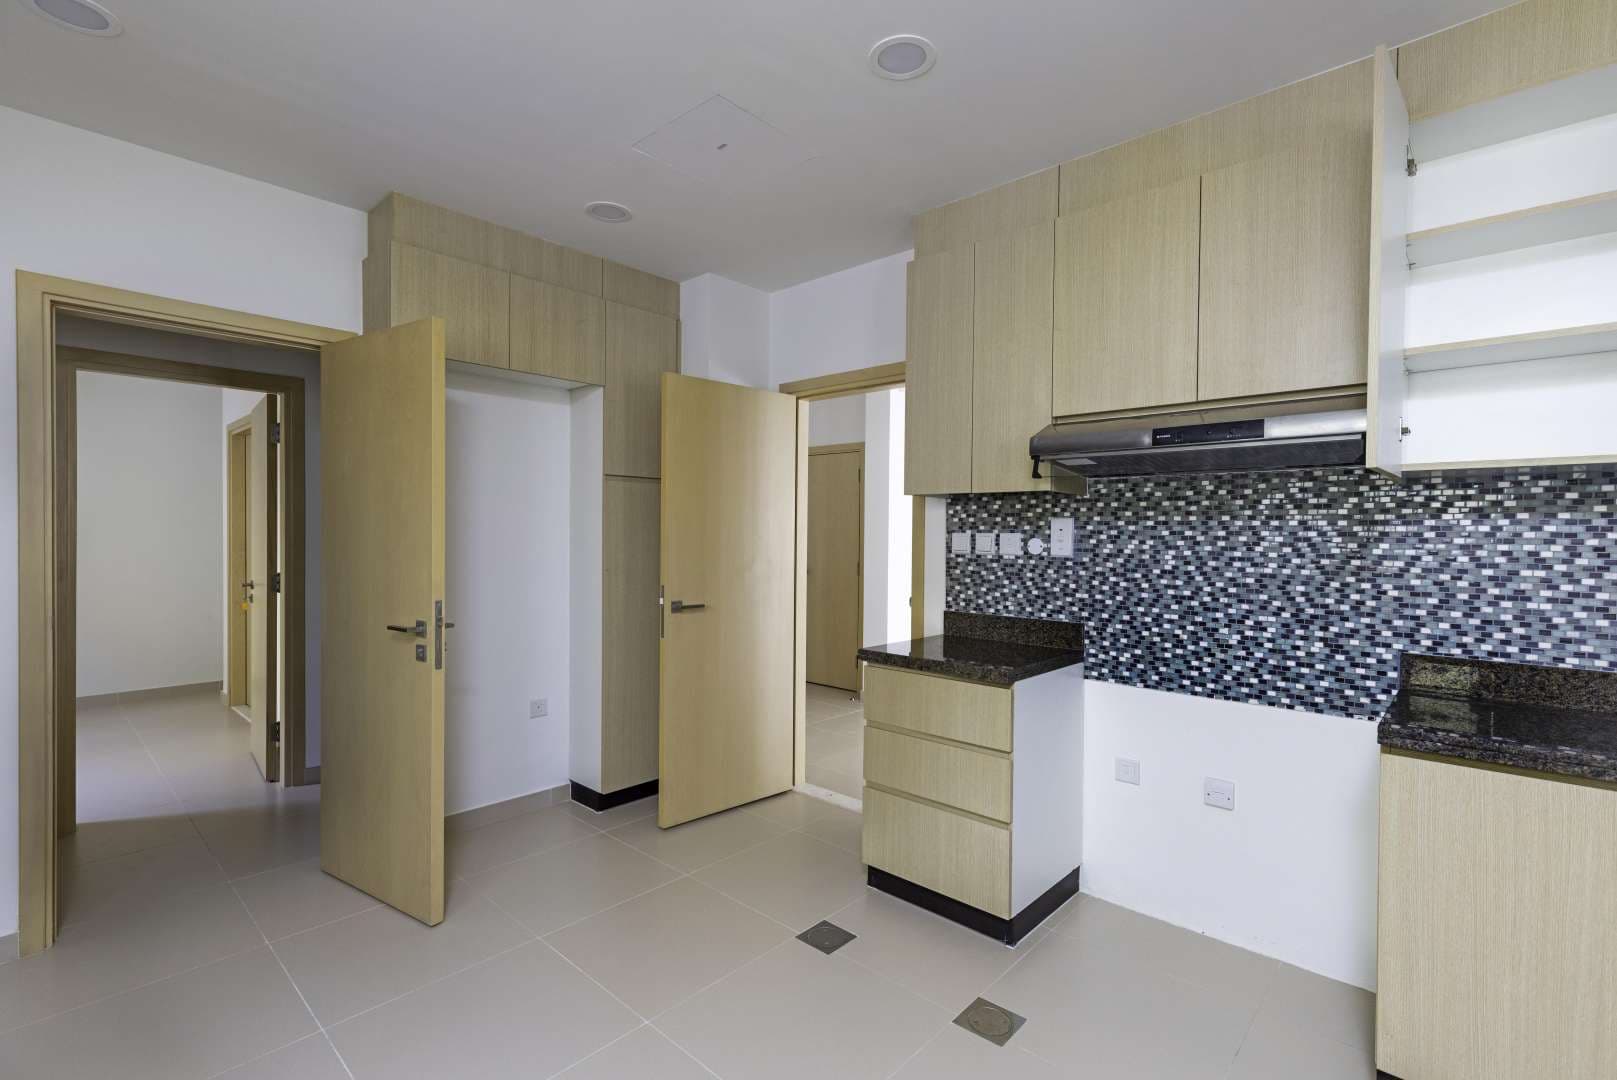 4 Bedroom Villa For Rent La Quinta Lp10469 14af3d9928ac7100.jpg